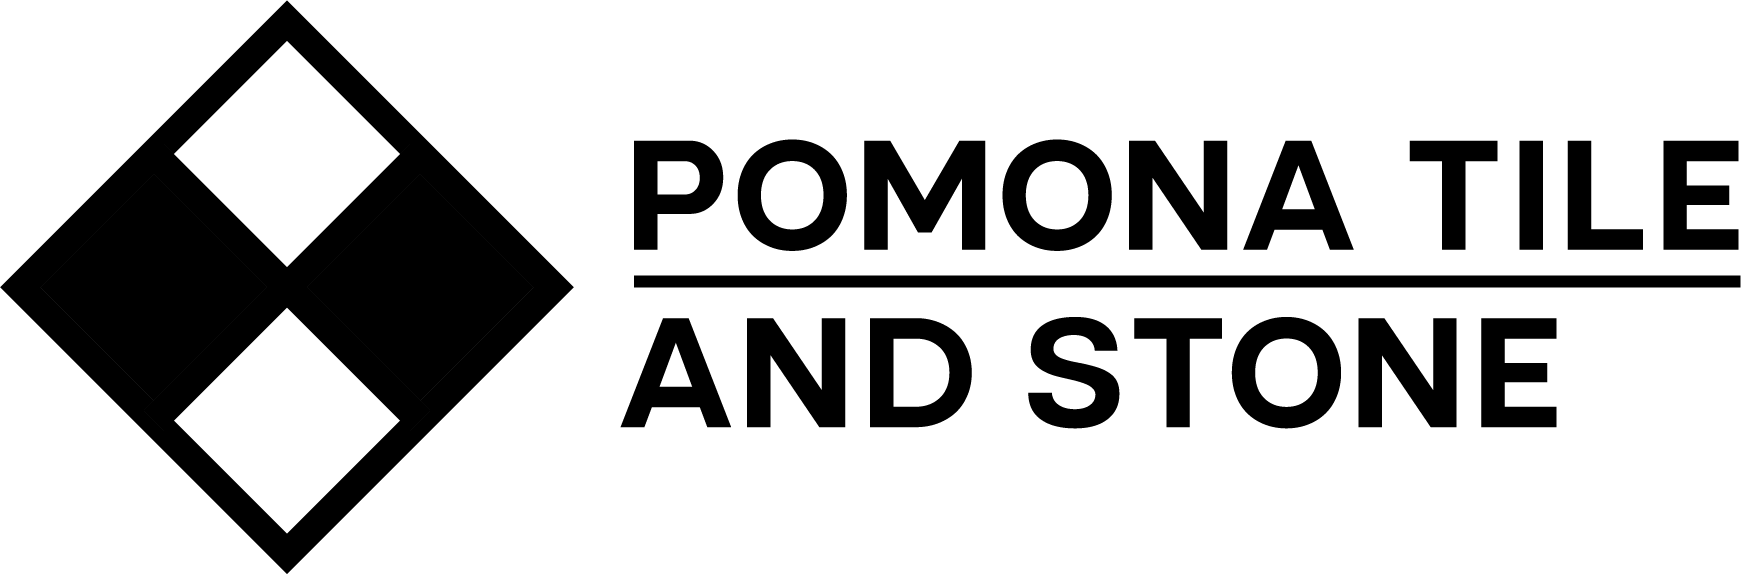 Pomona tile and stone - Logo